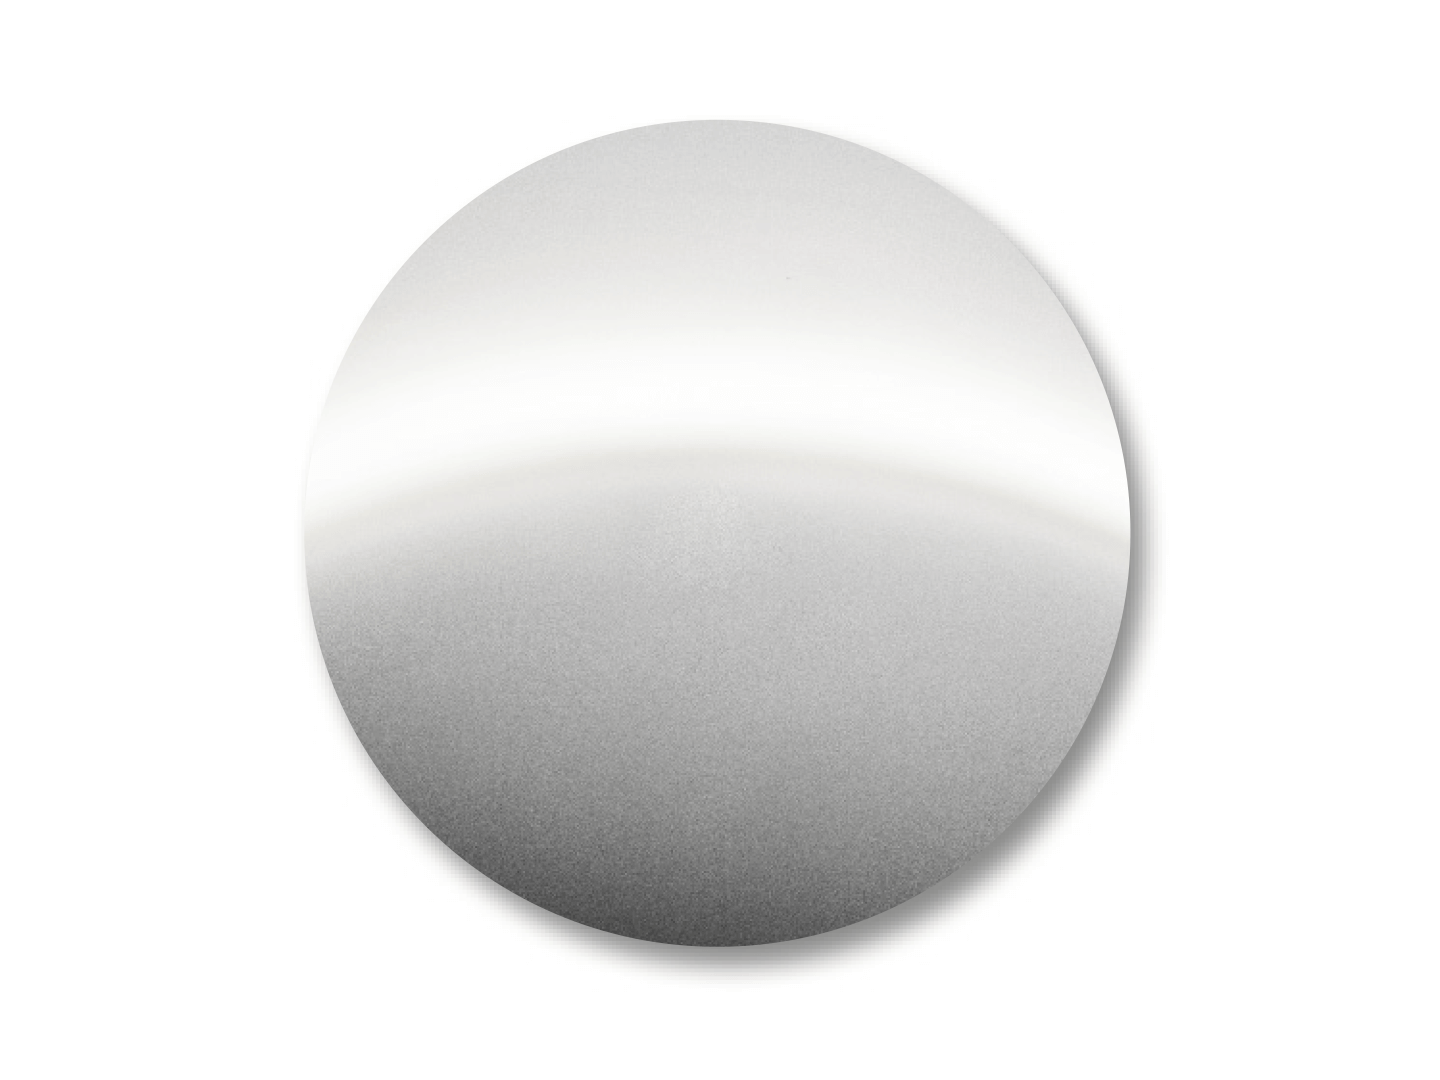 DuraVision Mirror Silver 的顏色示例。 